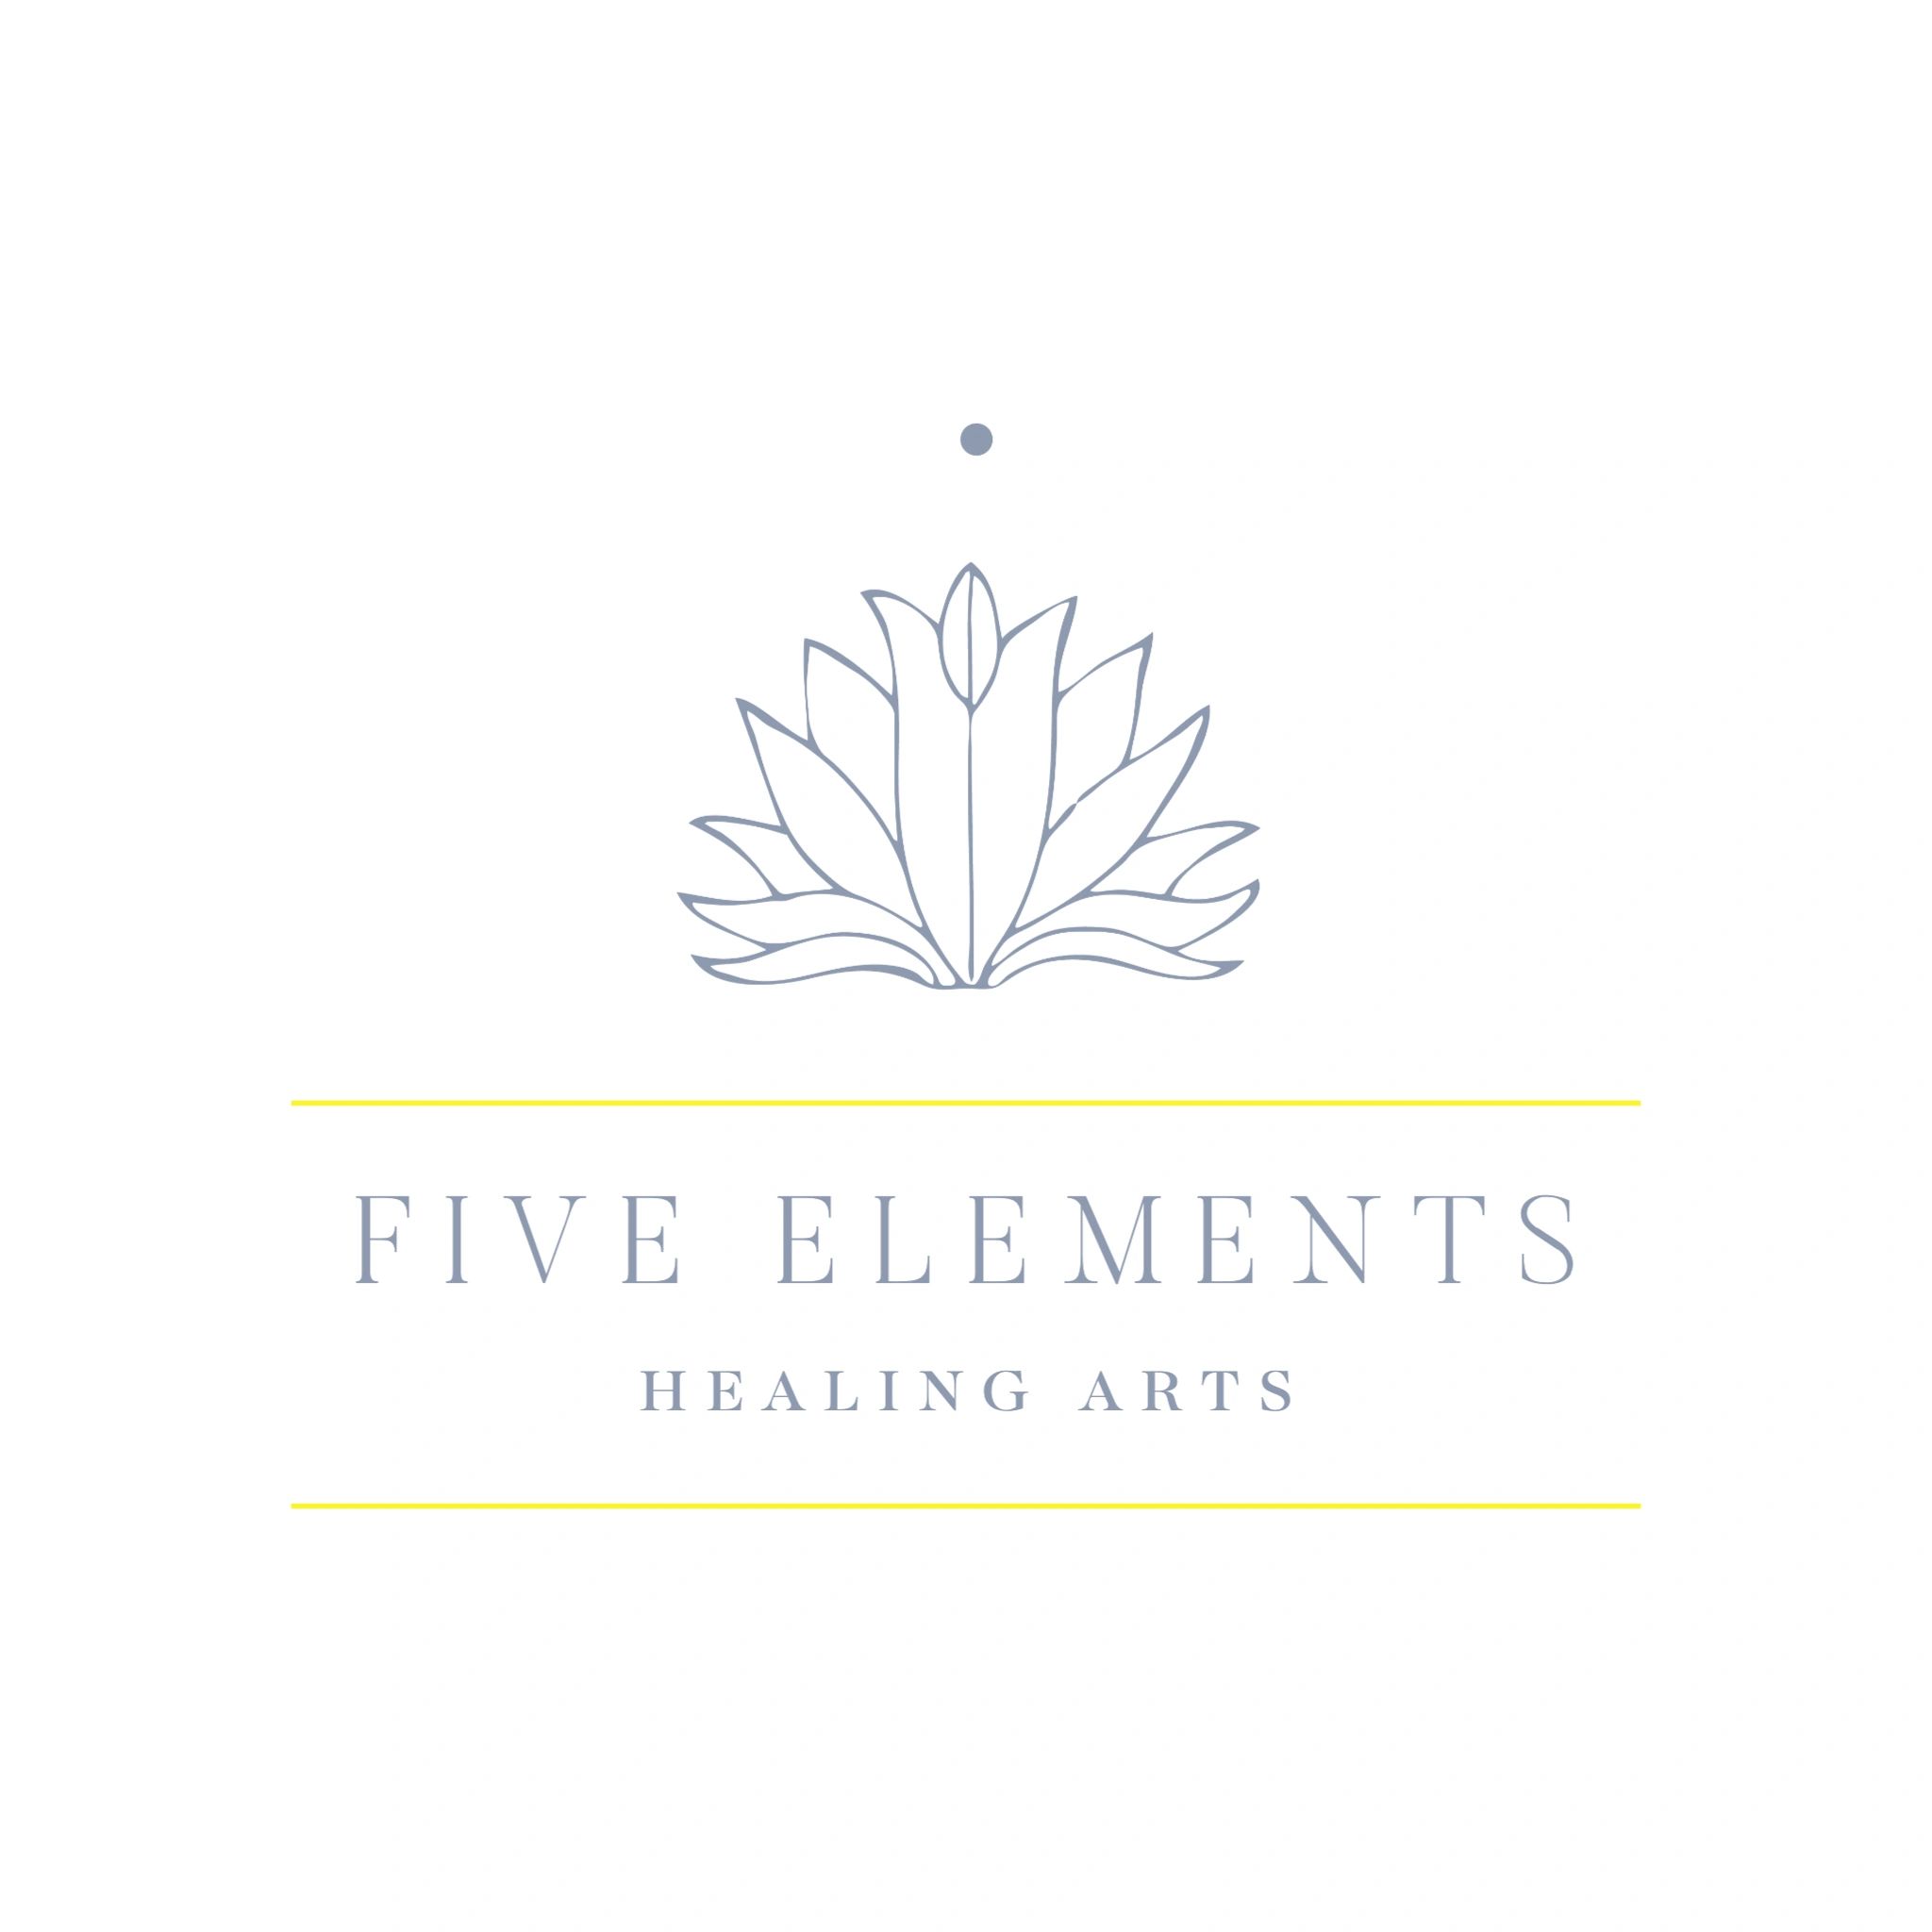 Five Elements Healing Arts